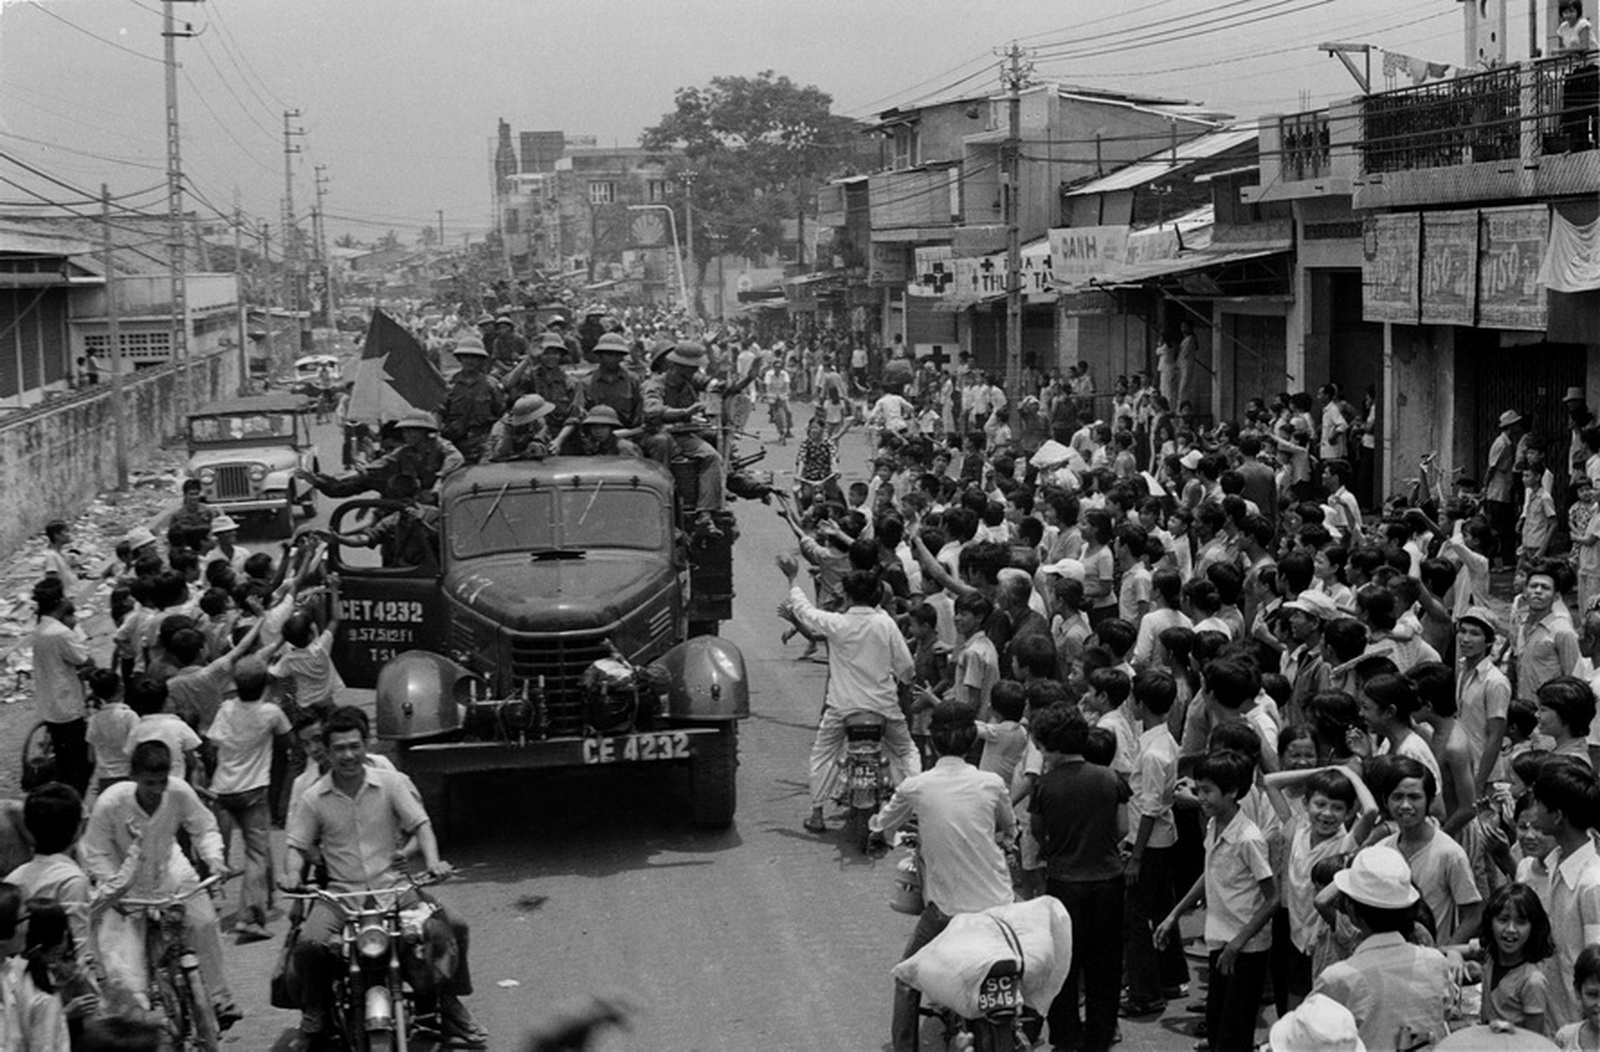  Nhân dân Sài Gòn đón chào quân Giải phóng tiến vào giải phóng thành phố, ngày 30-4-1975